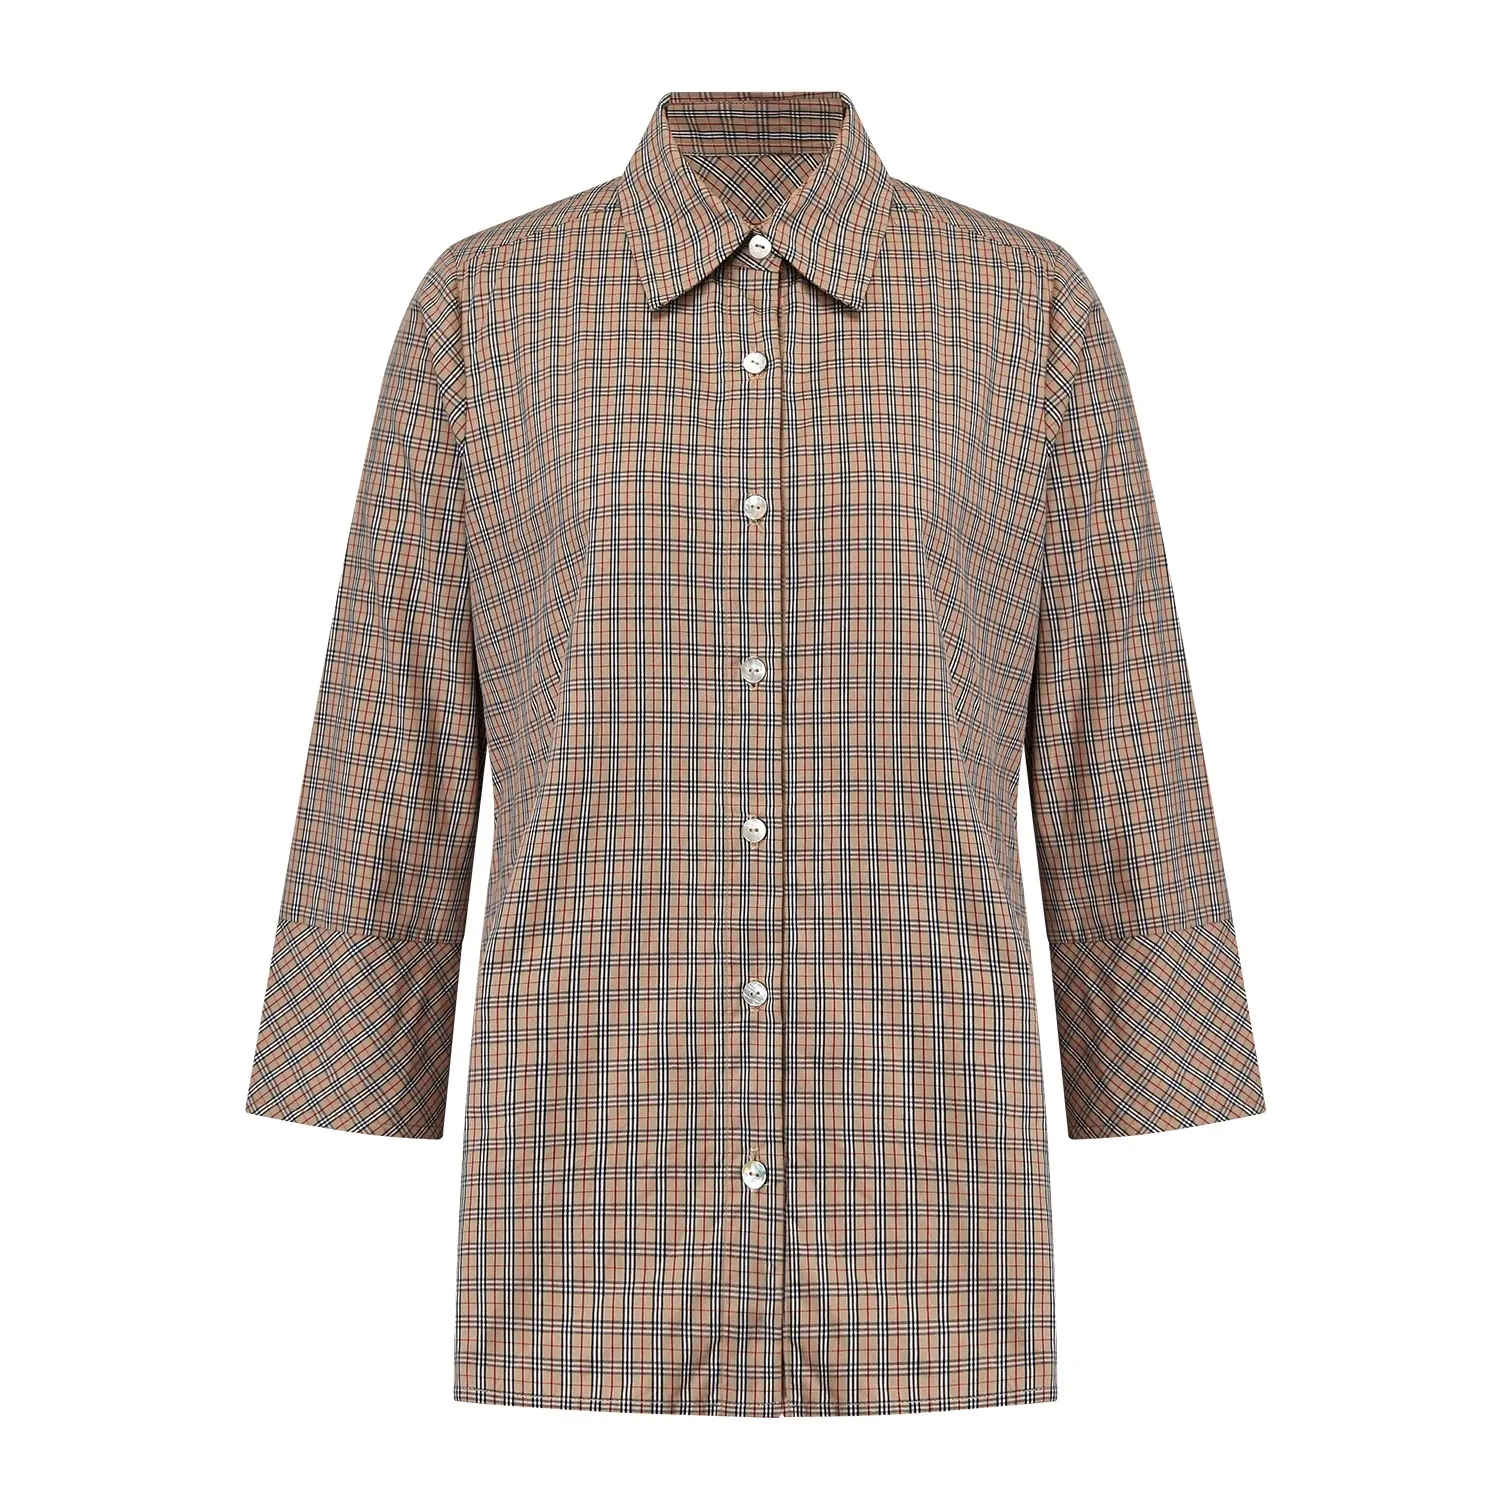 Kunden spezifische Designs Damen Solid Brown Overs ized Button Up Langarm Check Shirts Plaid Ofifce Baumwolle Blusen Frauen